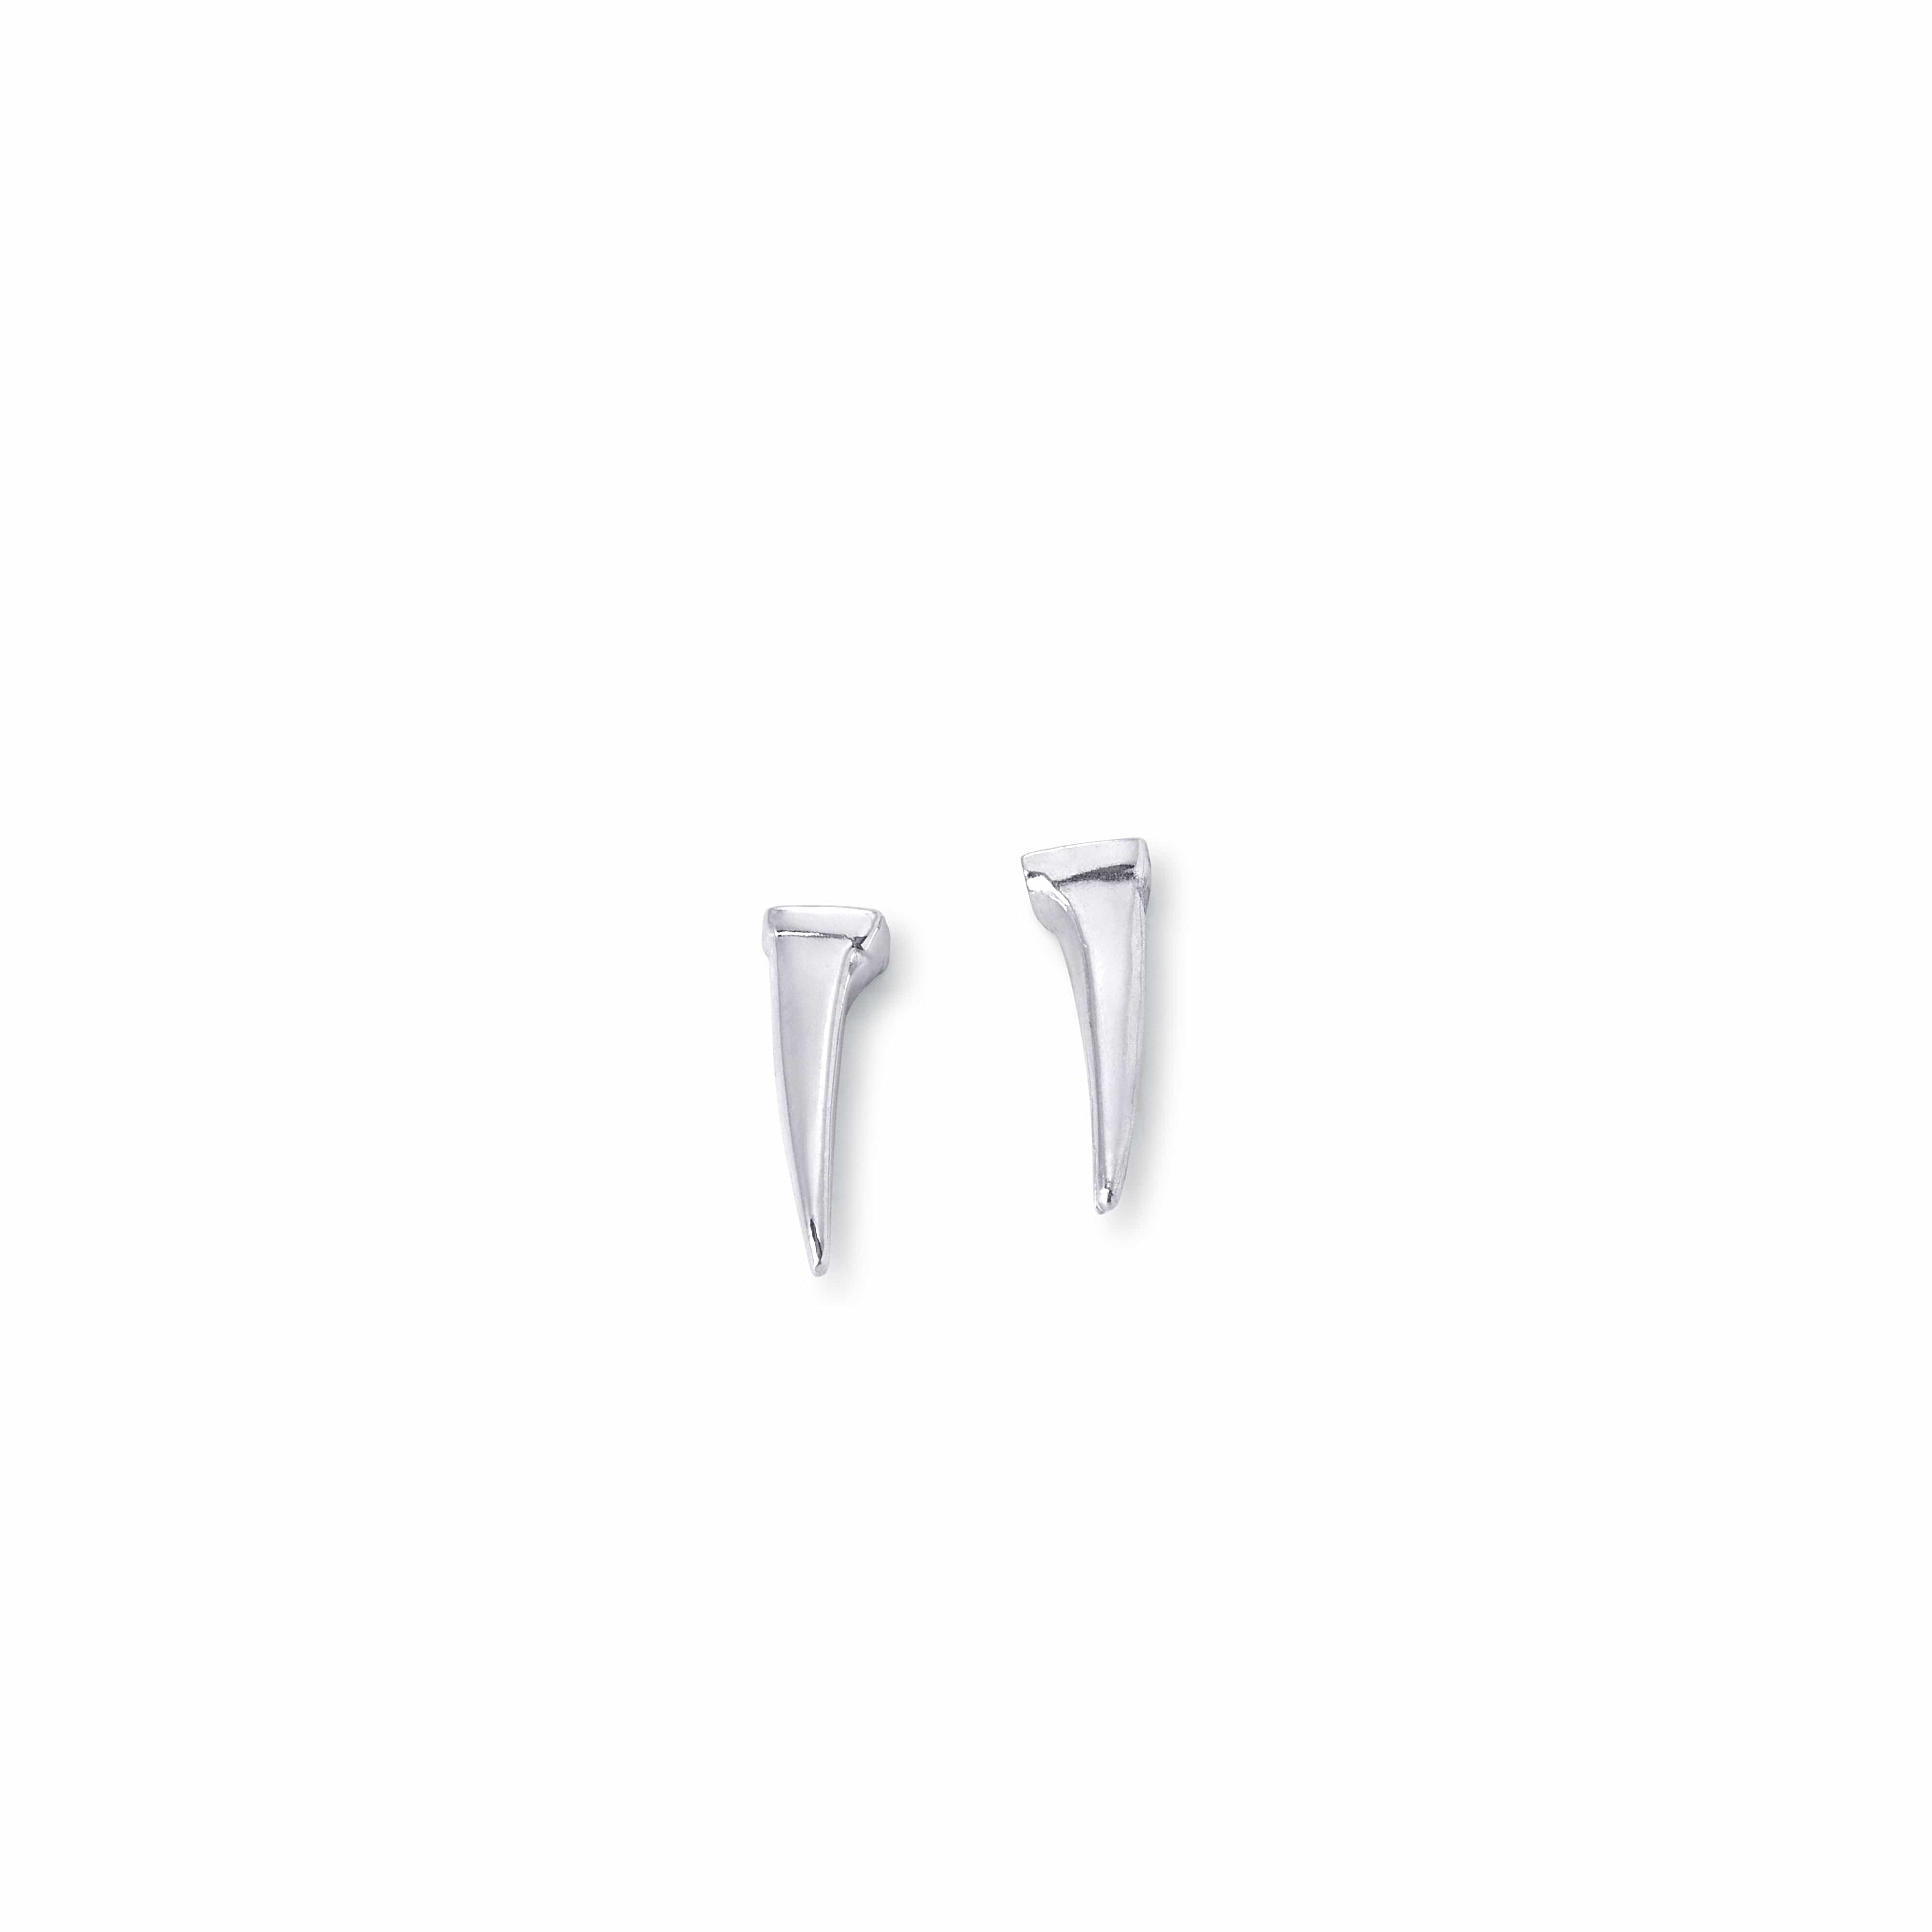 Bloodline Design Mens Earrings Thorn Earrings